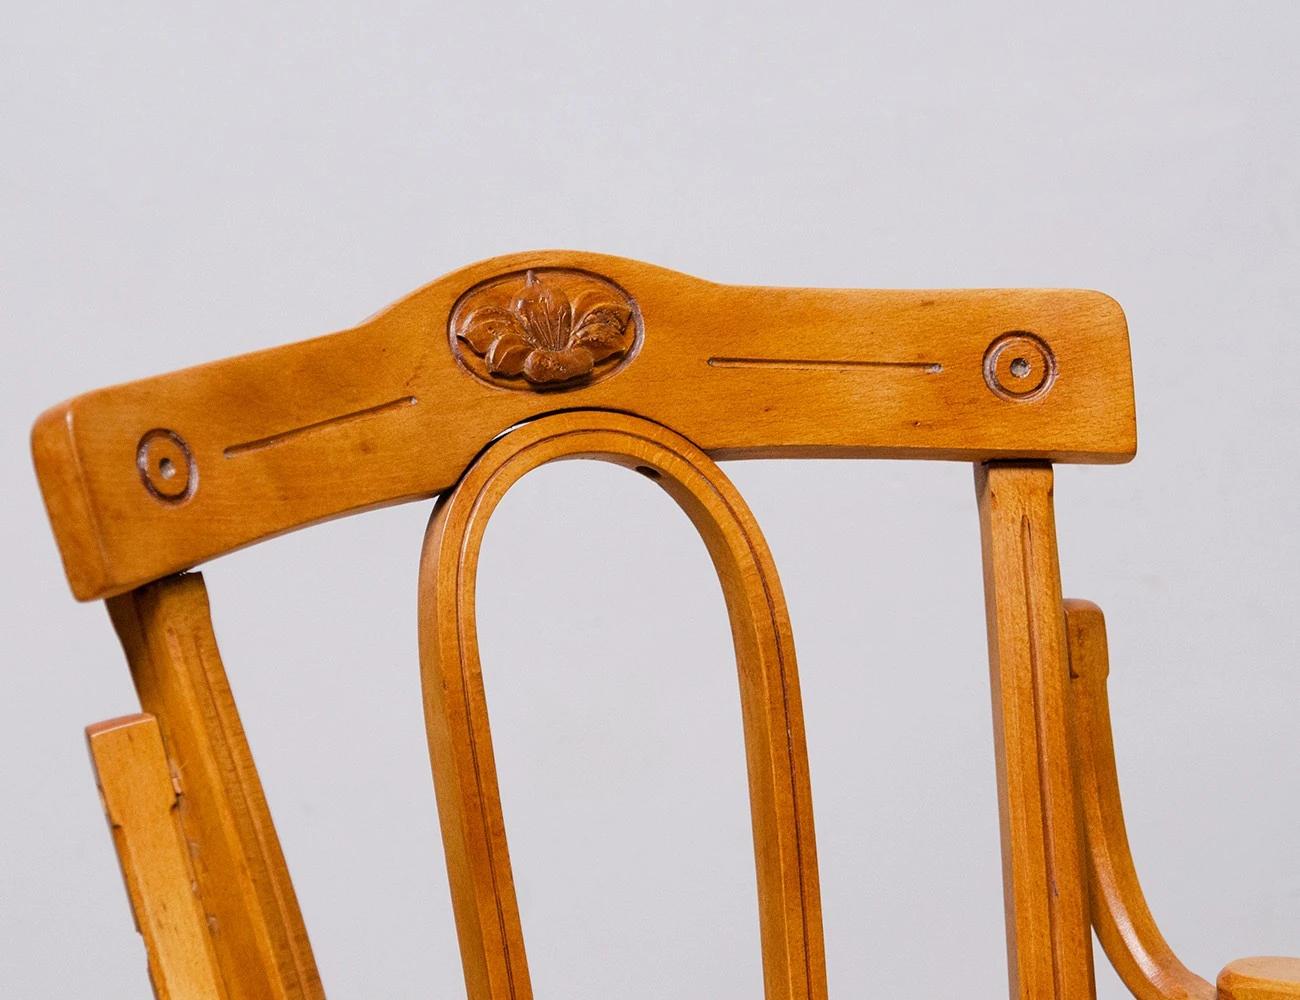 Реставрация венского кресла №104 Братьев Тонет